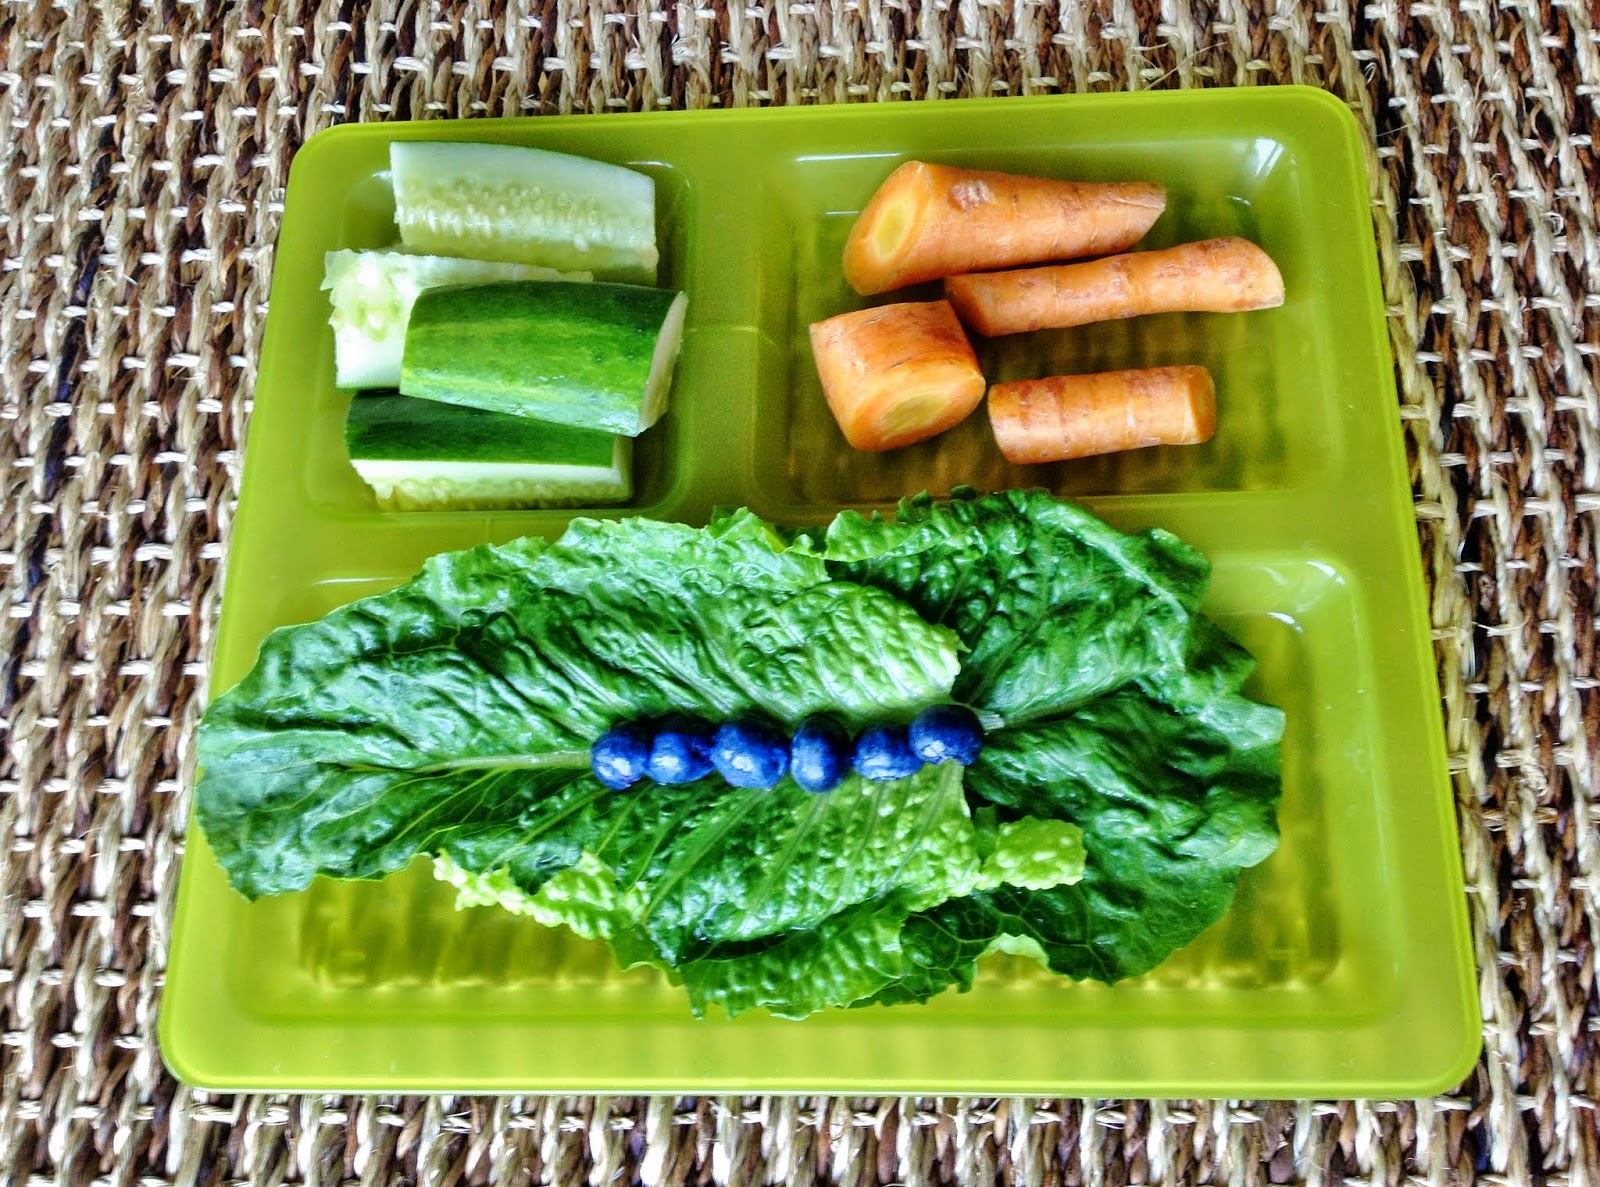 Guinea Pig breakfast: romaine lettuce, blueberries, carrots, cucumber.